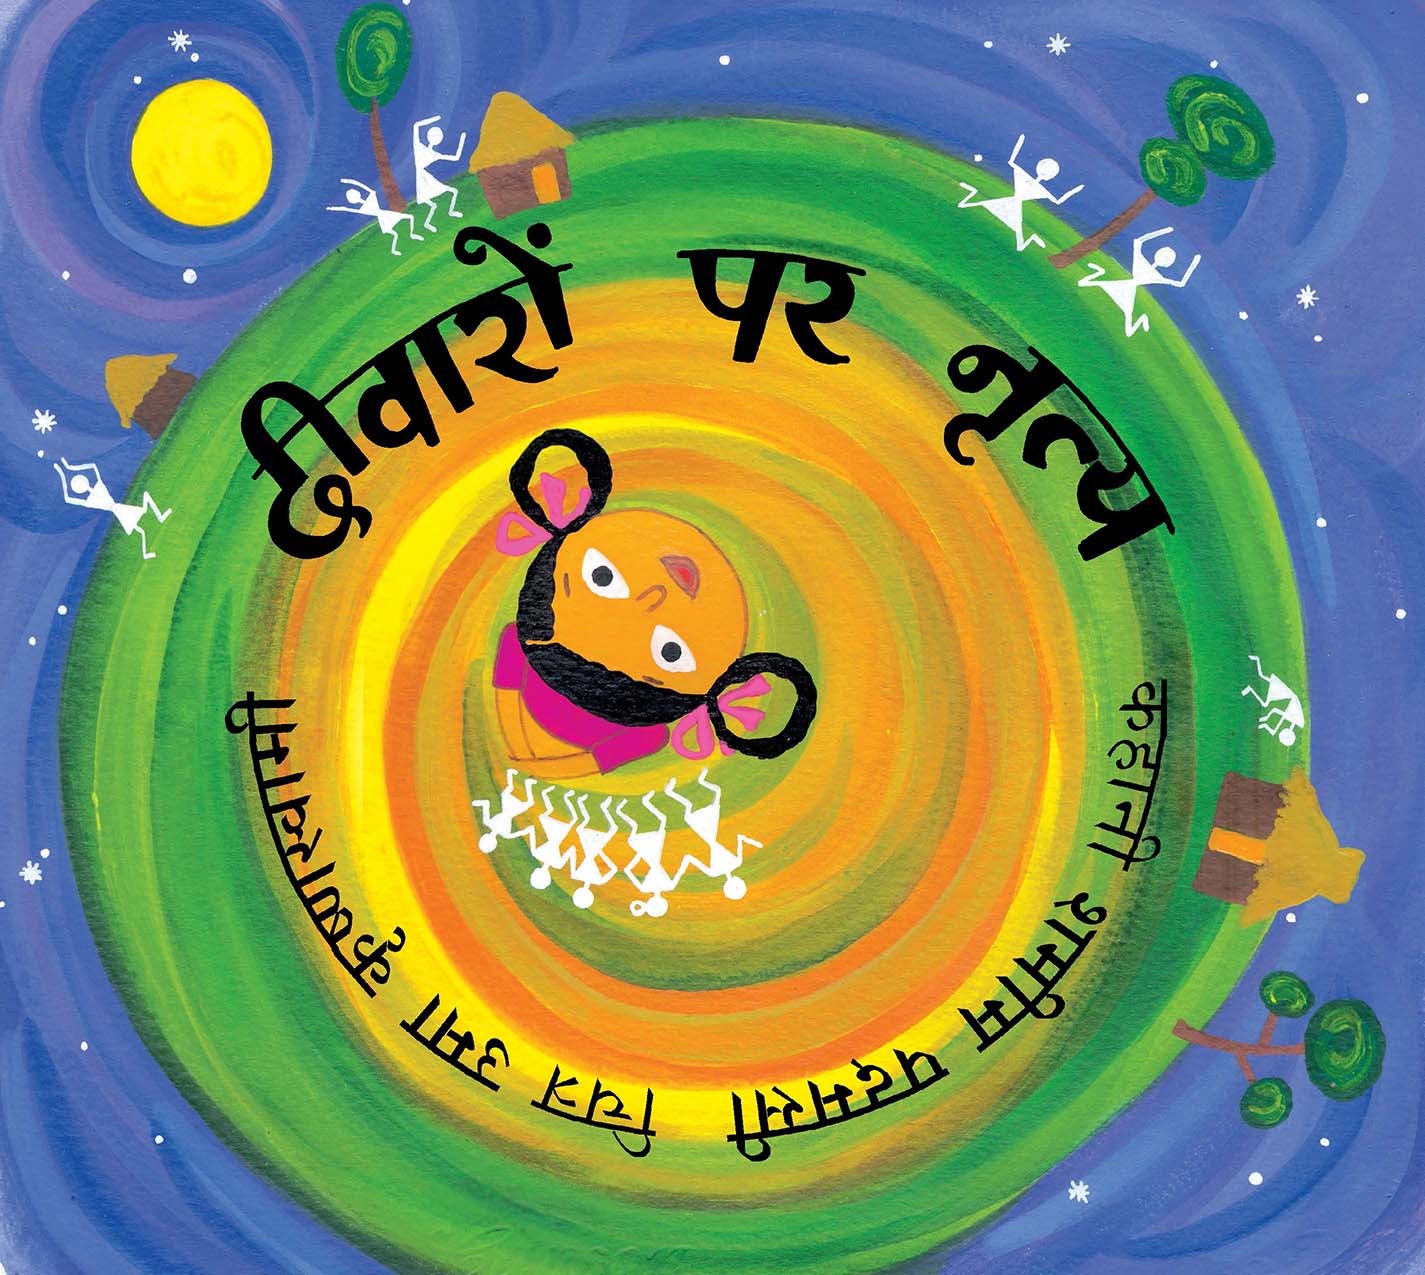 Dancing On Walls/Deewaron Par Nritya (Hindi)